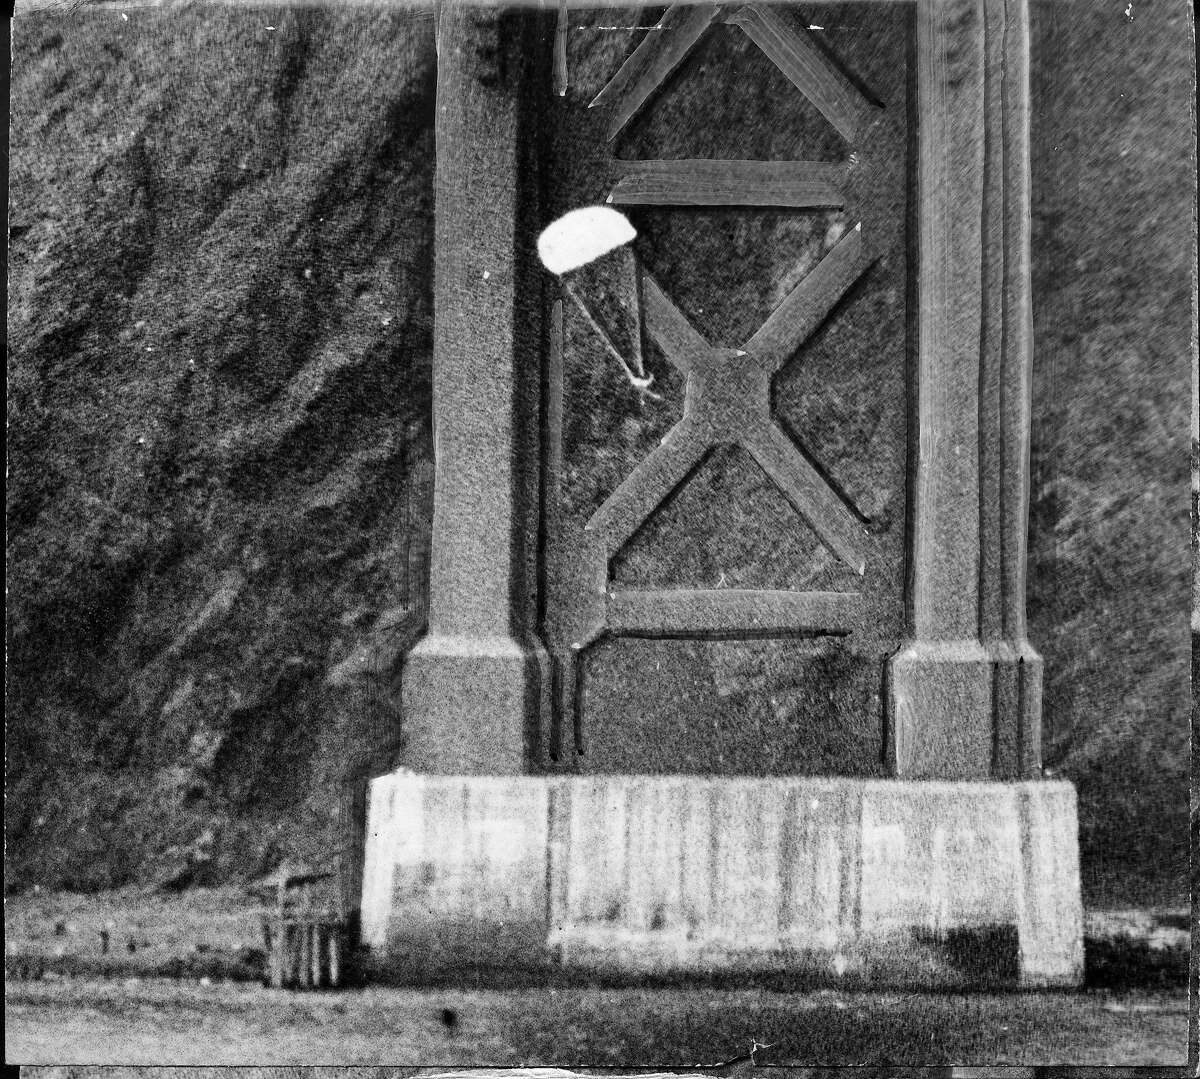 1949年4月15日，编年史摄影师鲍勃·坎贝尔拍摄了10张照片，记录了跳伞运动员罗伯特·奈尔斯第二次成功从金门大桥上跳伞的过程